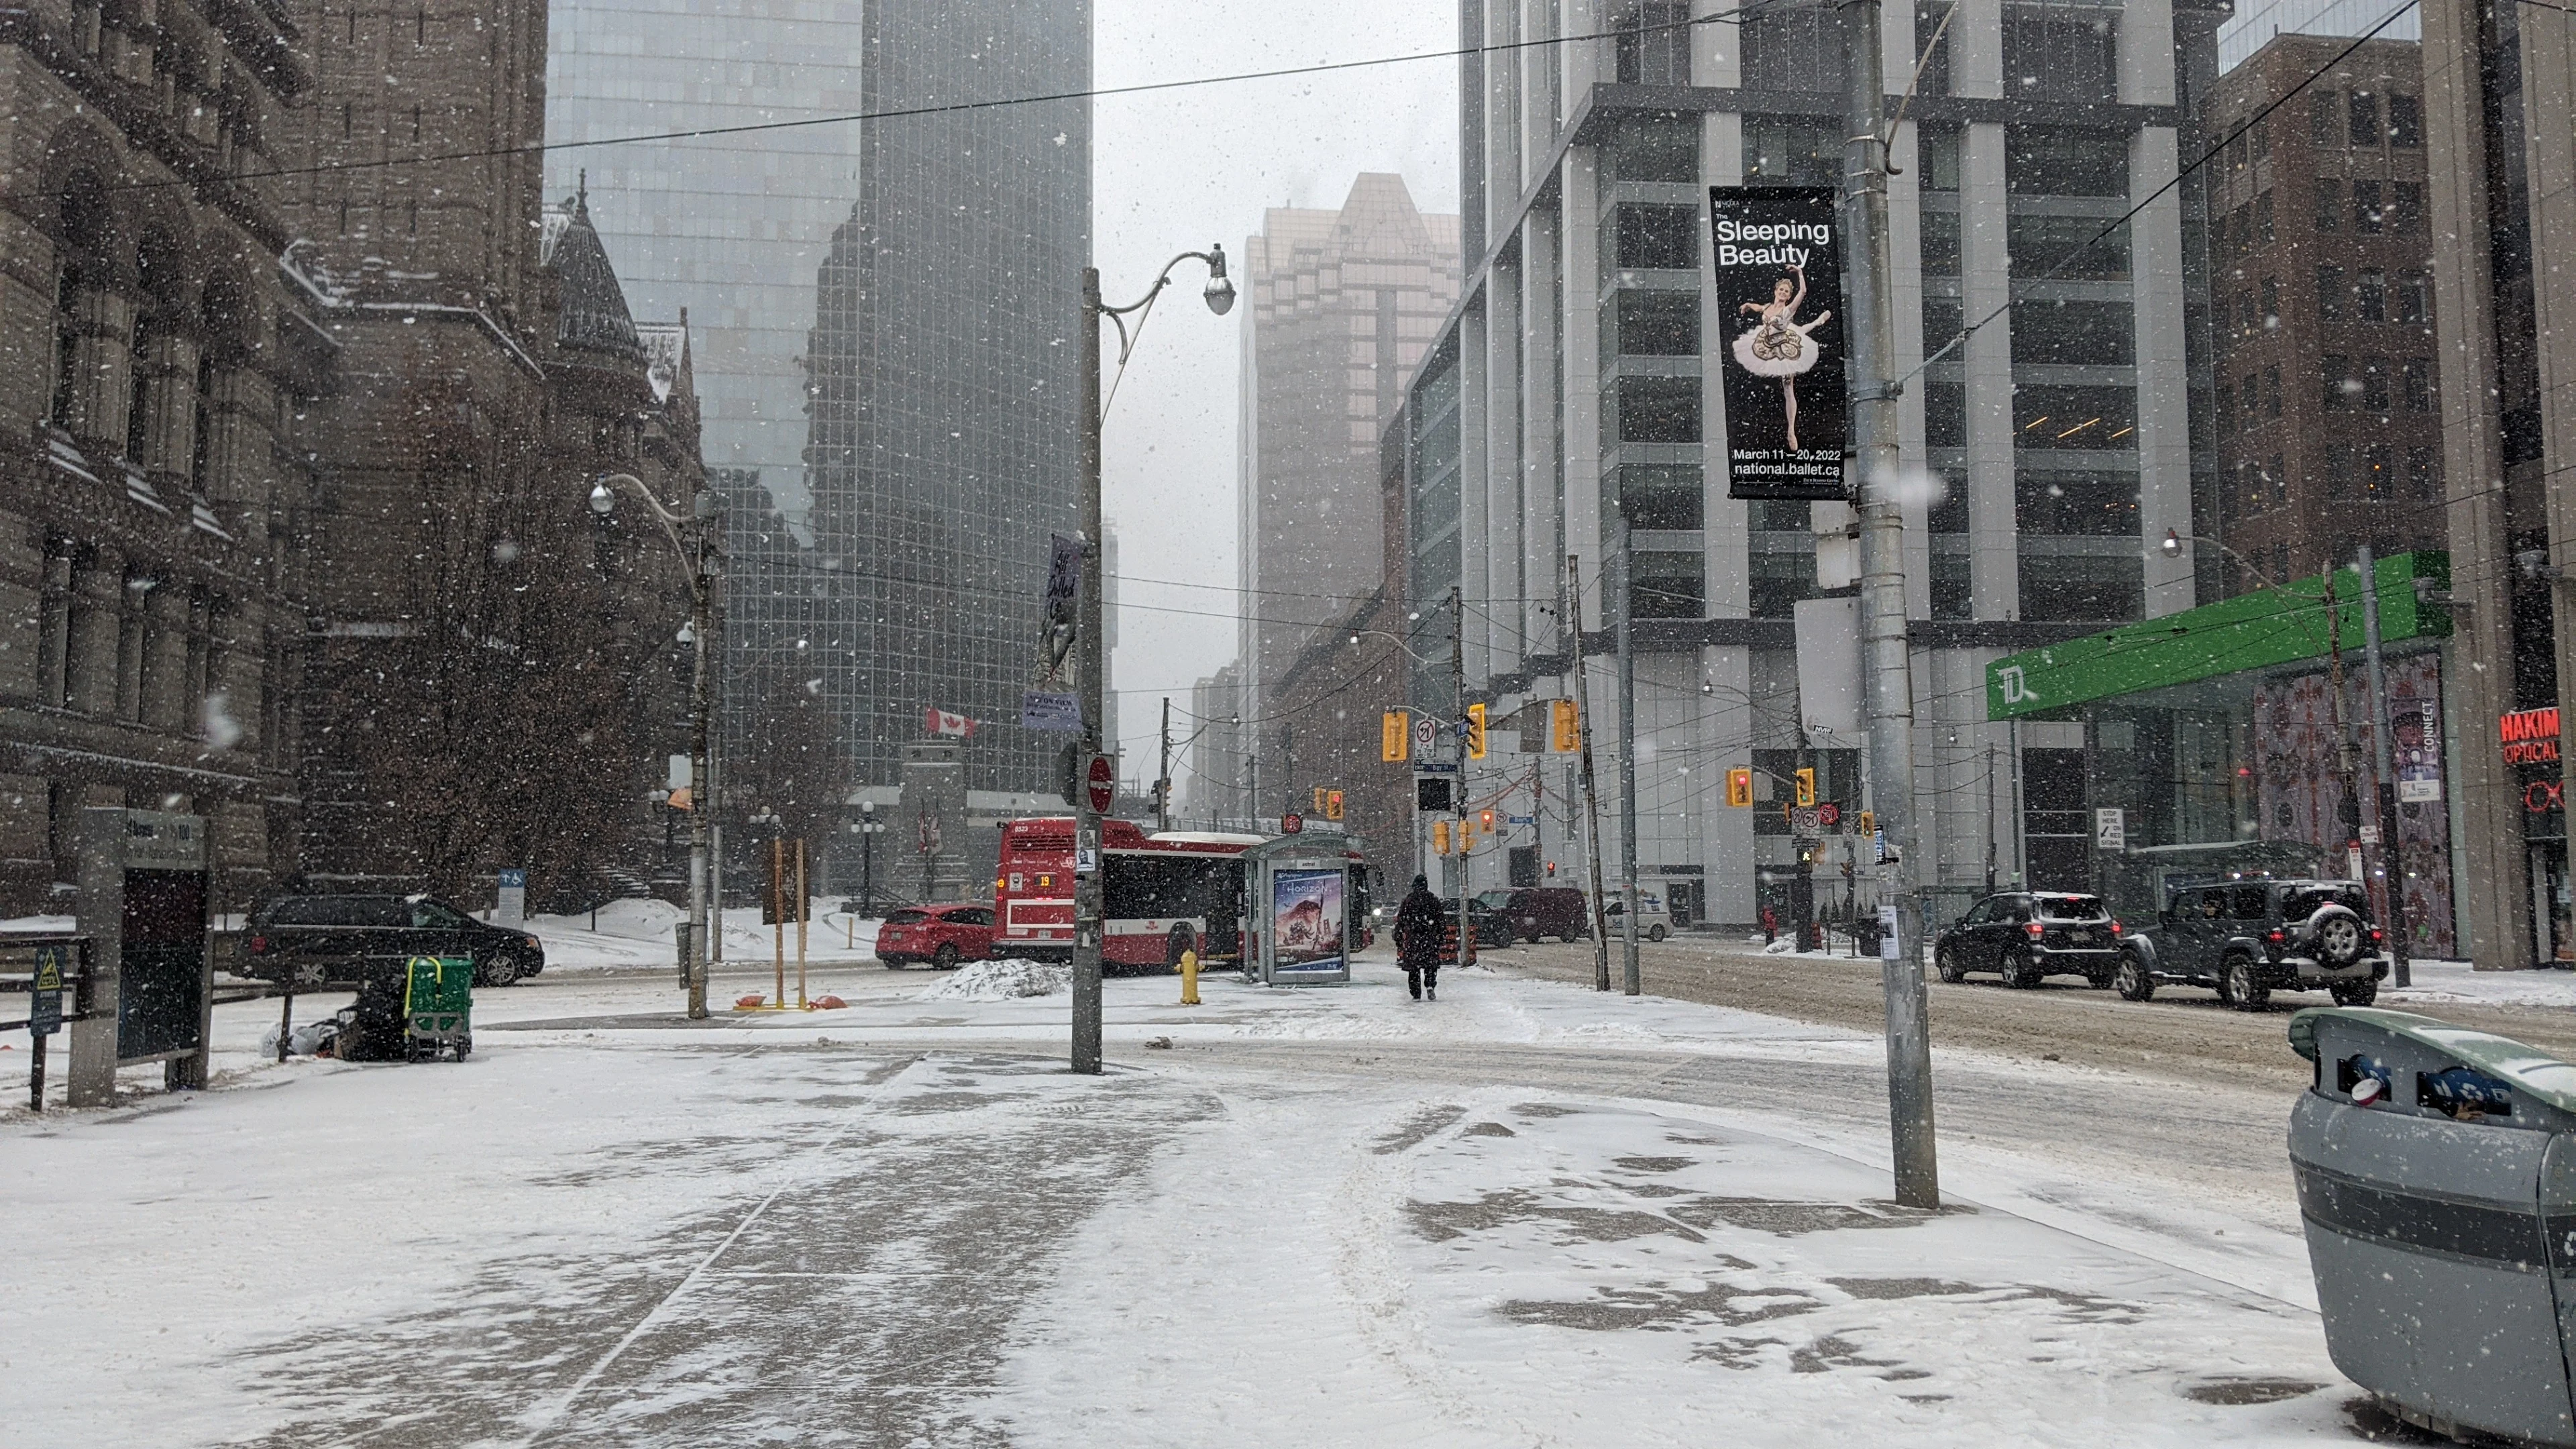 Downtown Toronto, Feb. 25, 2022. Snowfall, snow, winter. (Marta Czurylowicz)